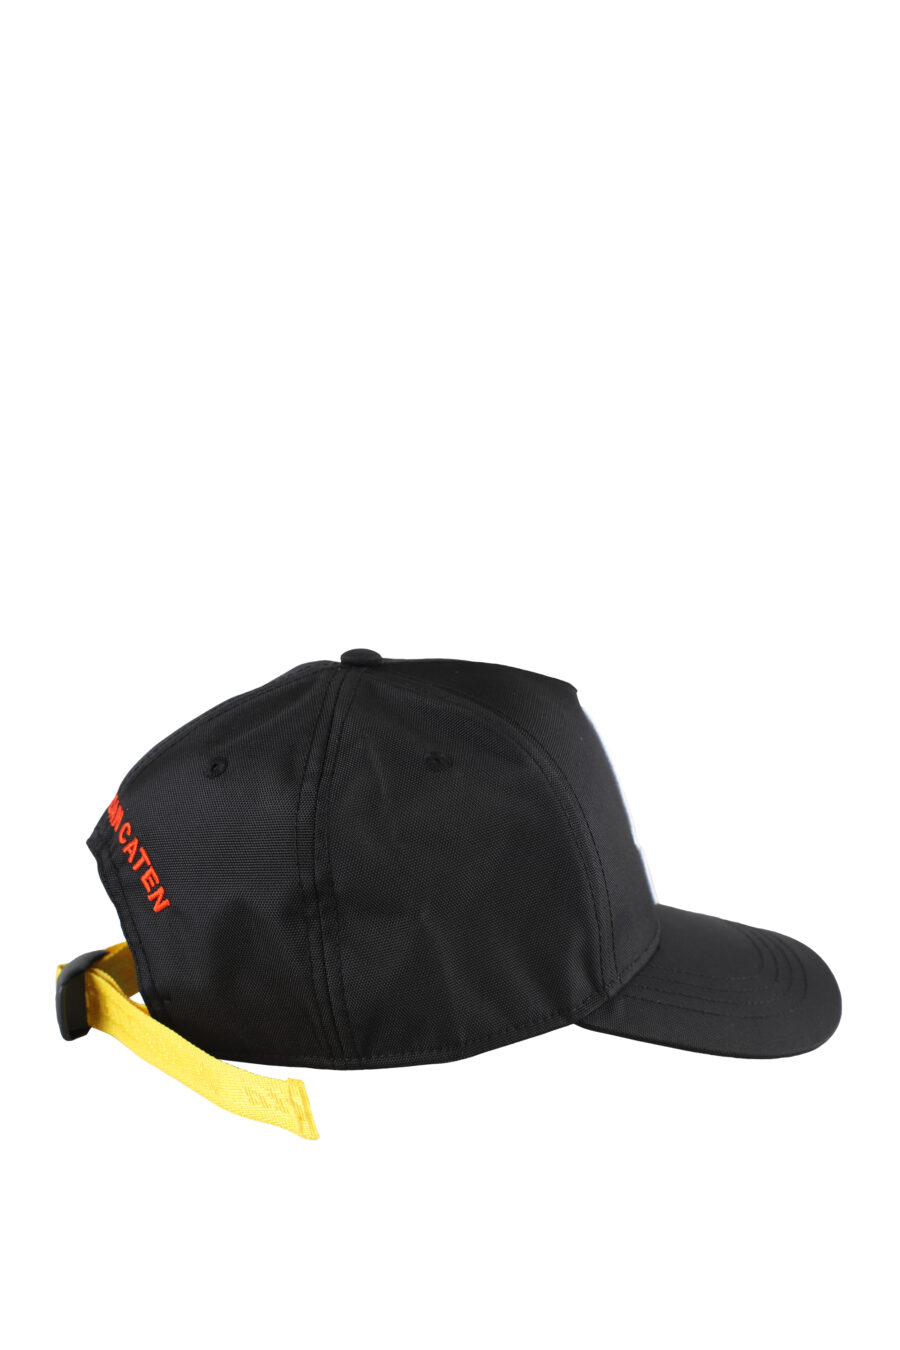 Casquette noire réglable avec bande jaune et écusson "invicta" - IMG 5184